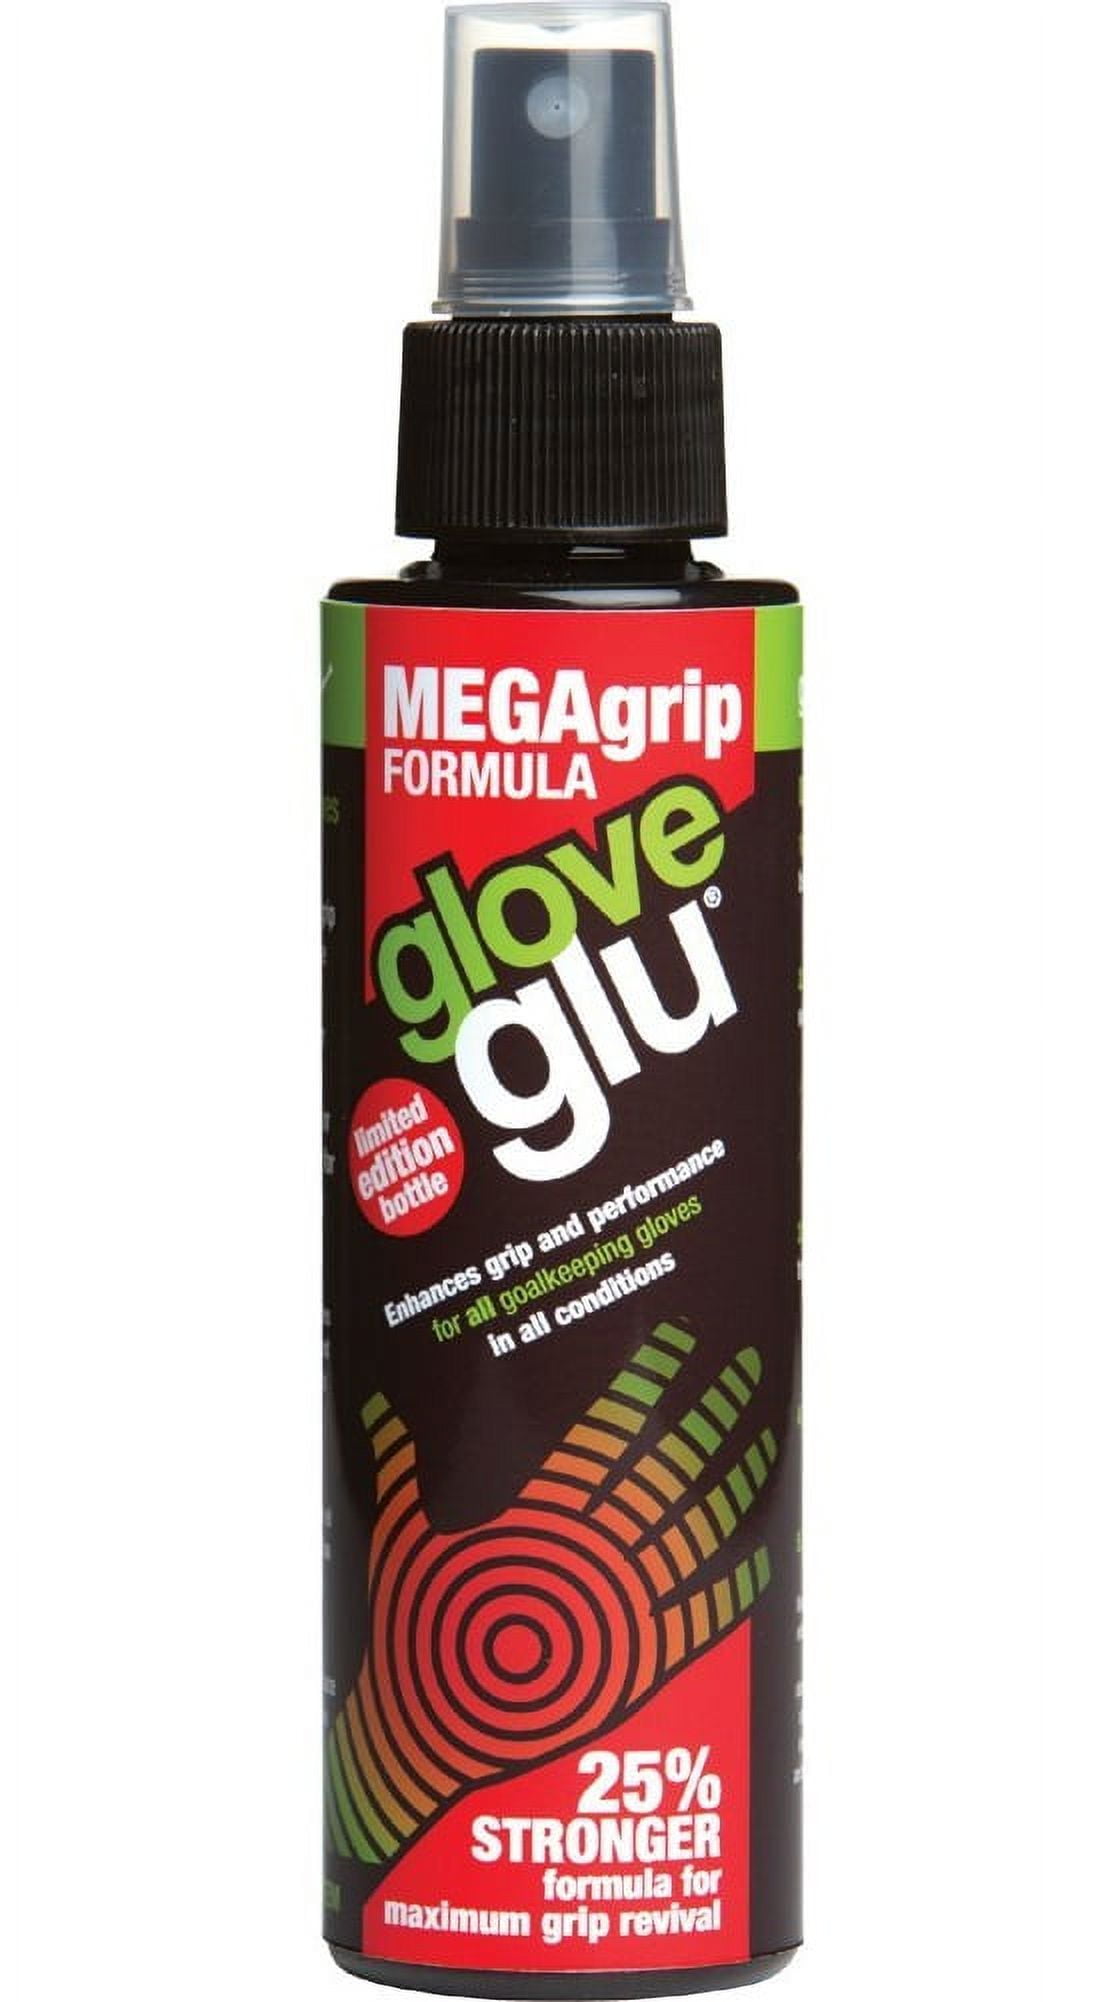 Comprar Glove Glu Mega Grip en USA desde Costa Rica